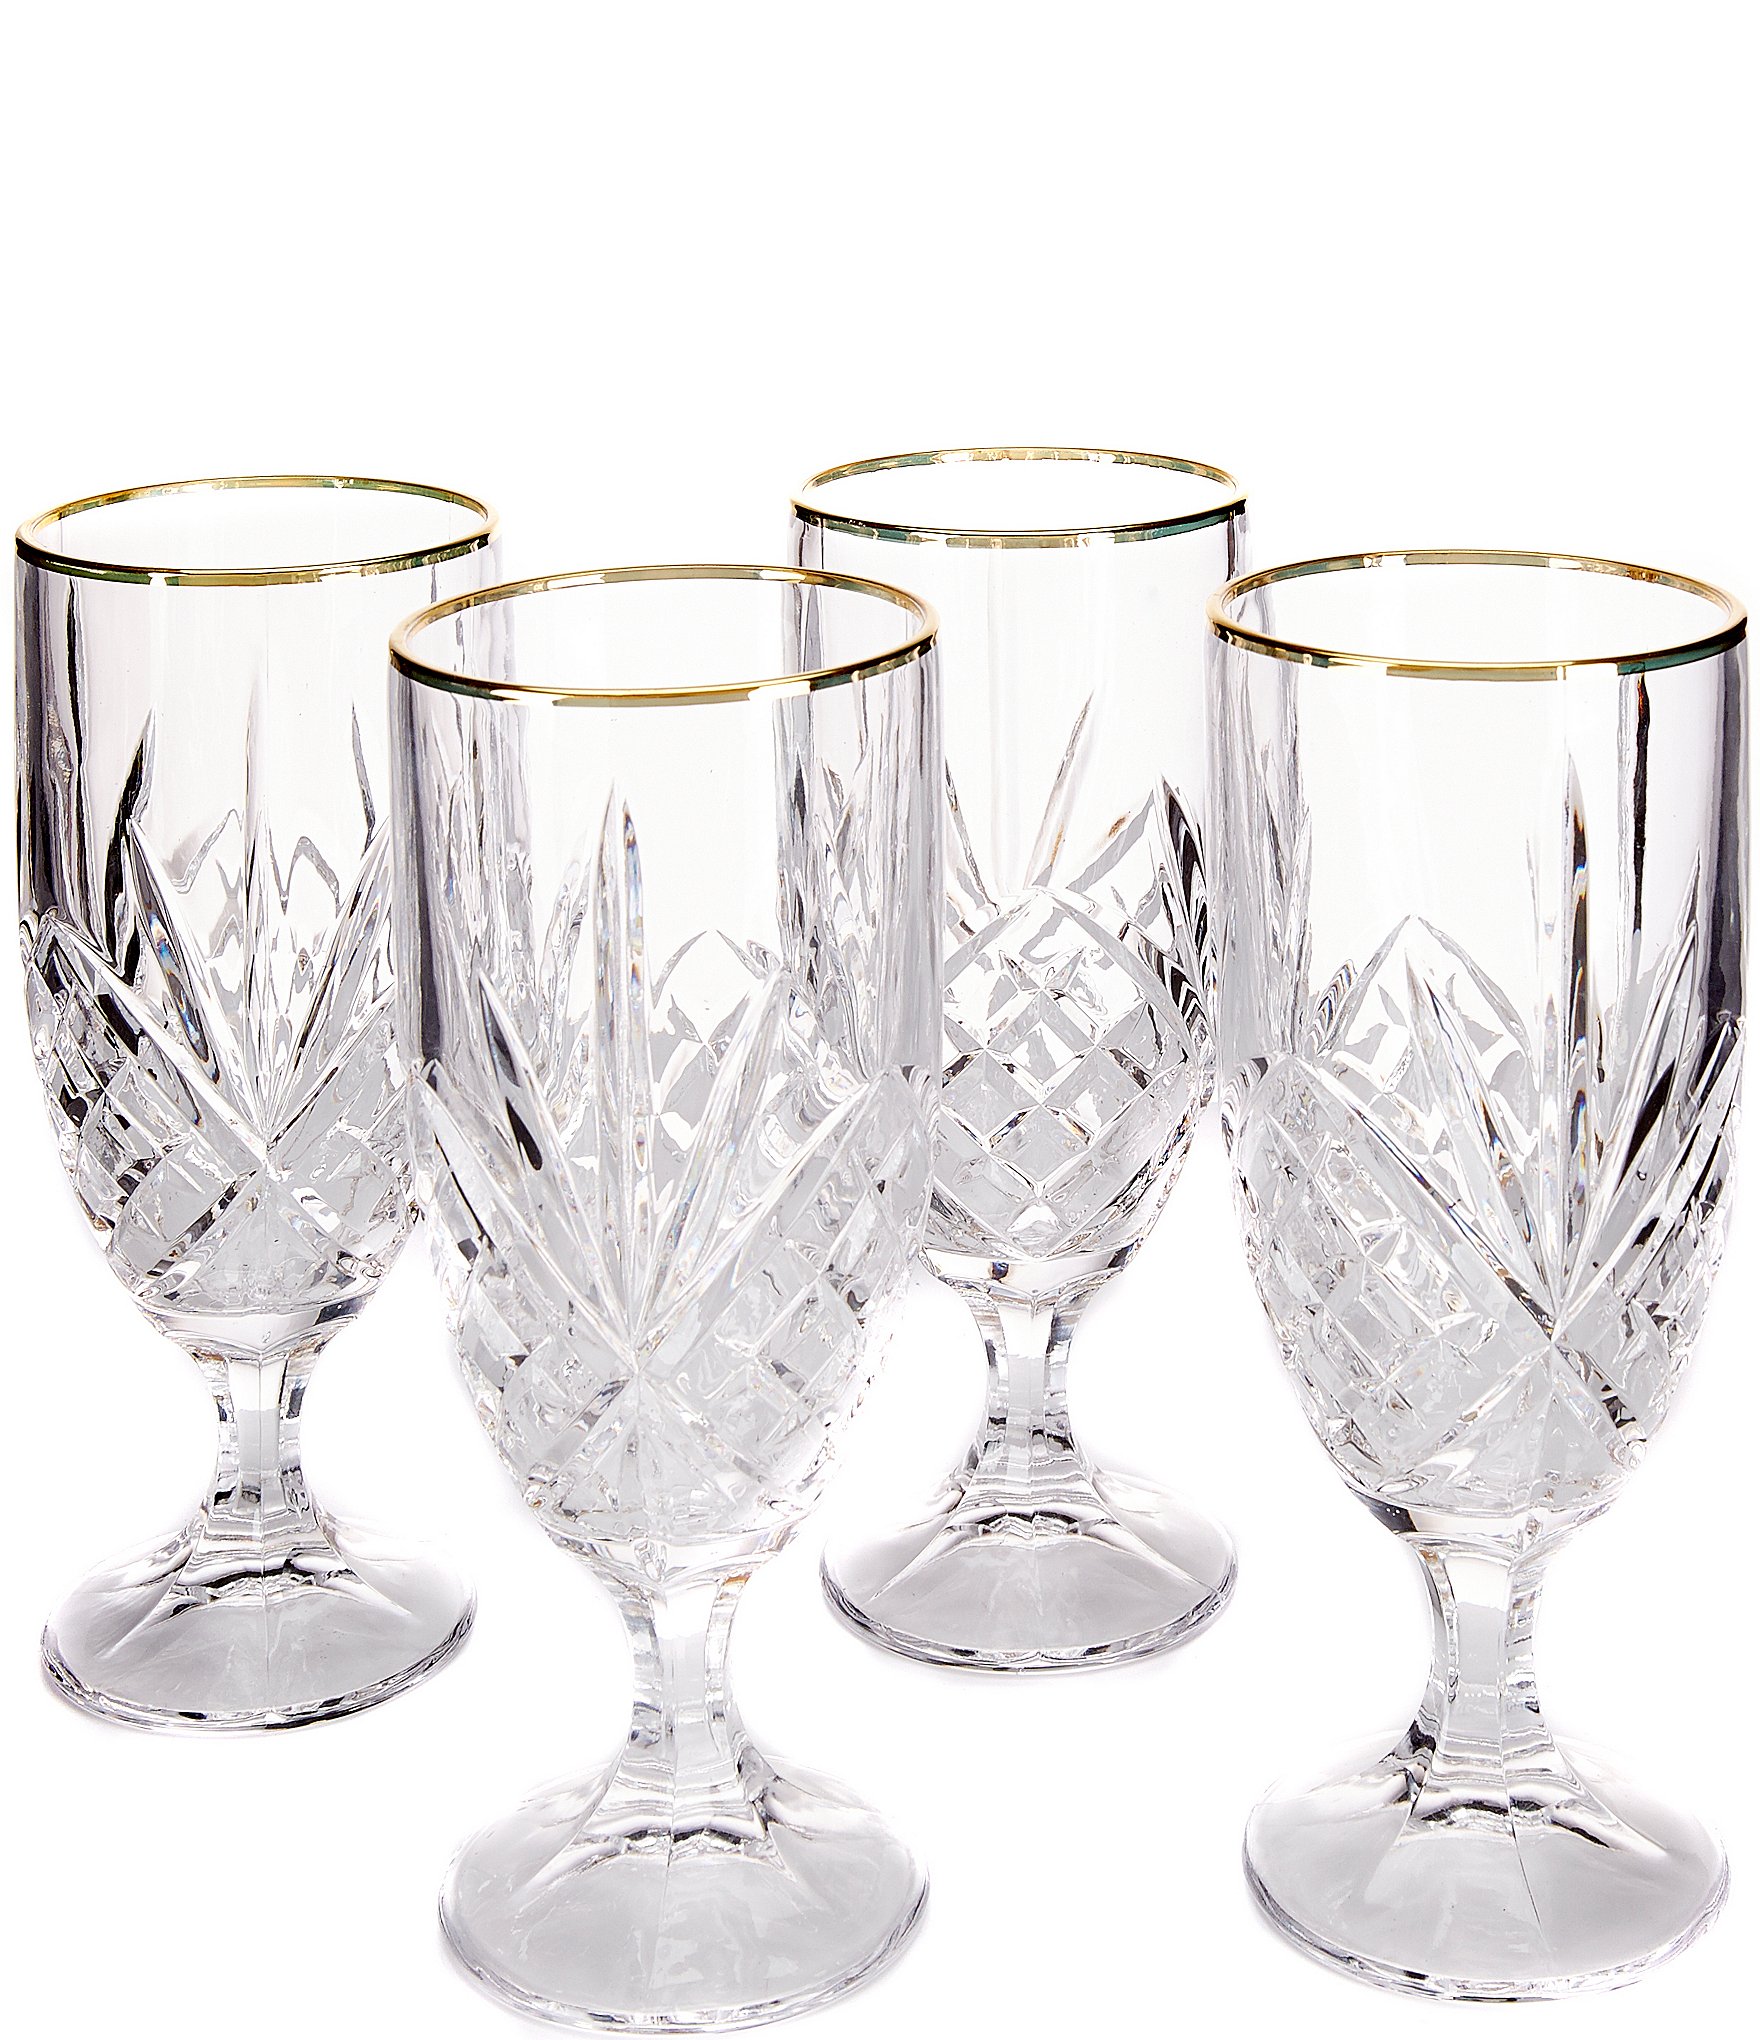 https://dimg.dillards.com/is/image/DillardsZoom/zoom/godinger-dublin-gold-rimmed-handcrafted-crystal-iced-beverage-glasses-set-of-4/04217512_zi_gold.jpg